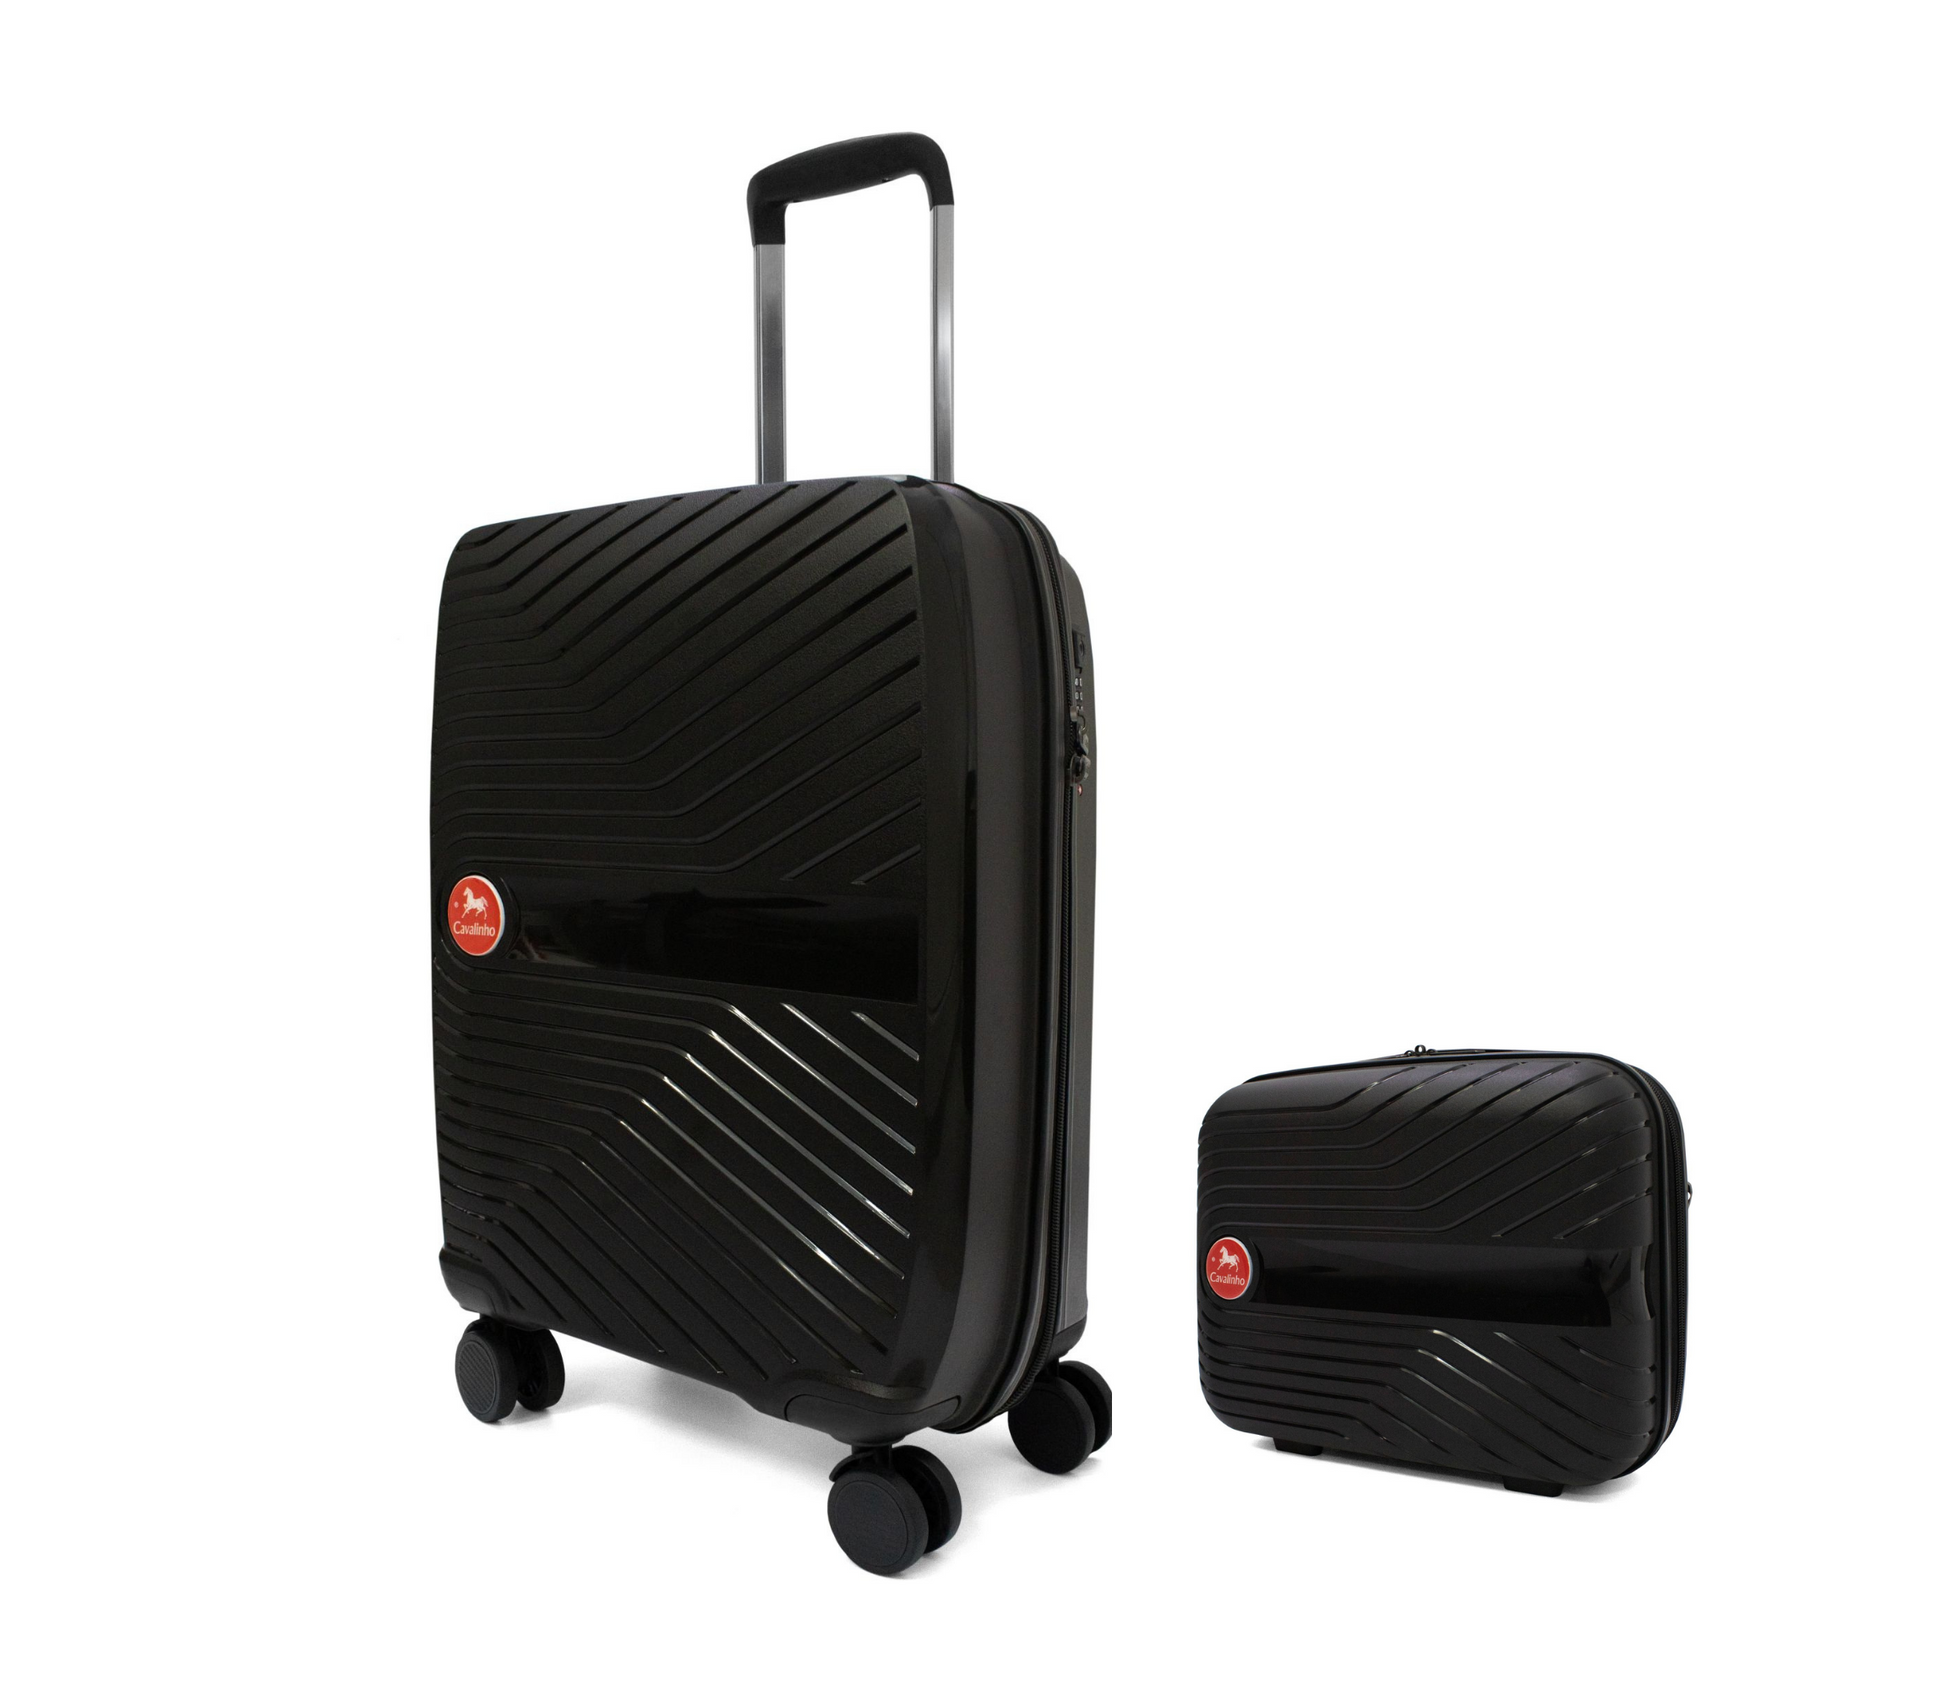 #color_ Black Black | Cavalinho Canada & USA Colorful 2 Piece Luggage Set (15" & 19") - Black Black - 68020004.0101.S1519._3